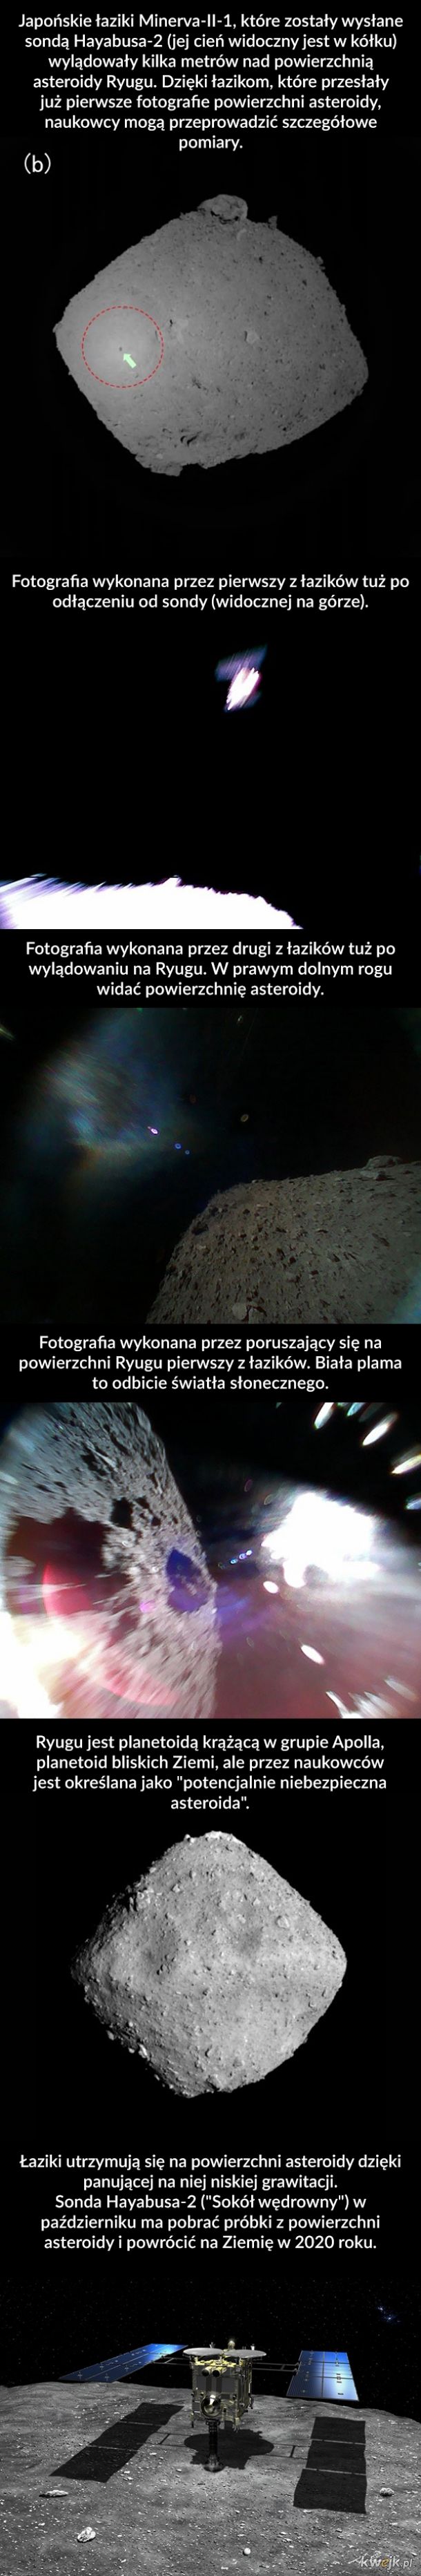 Pierwsze zdjęcia z powierzchni asteroidy